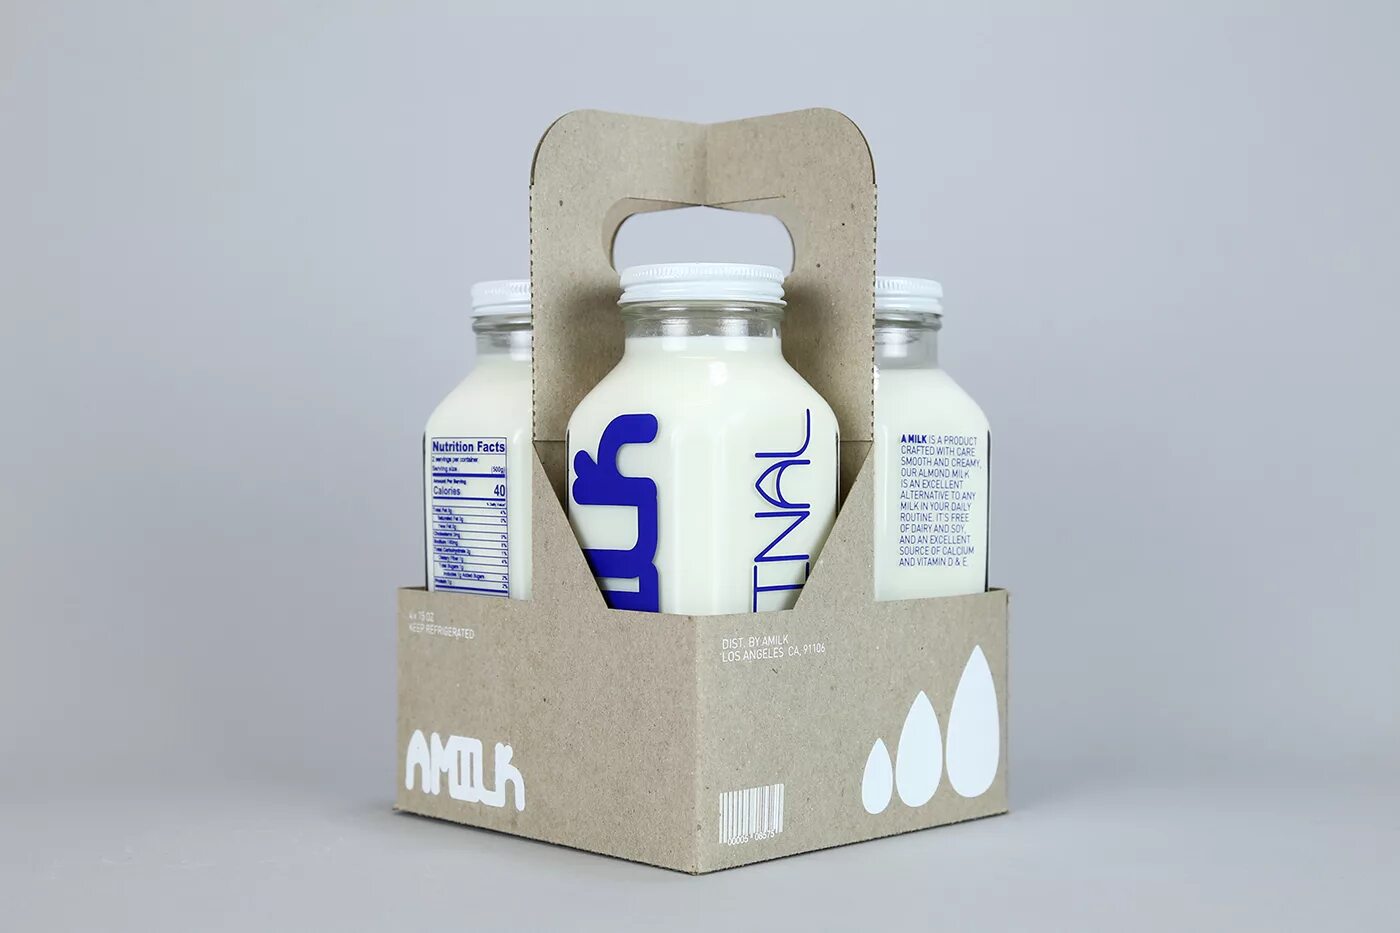 Нестандартный продукт. Упаковка молока. Необычная упаковка молока. Полимерная упаковка для молока. Необычные упаковки молочной продукции.